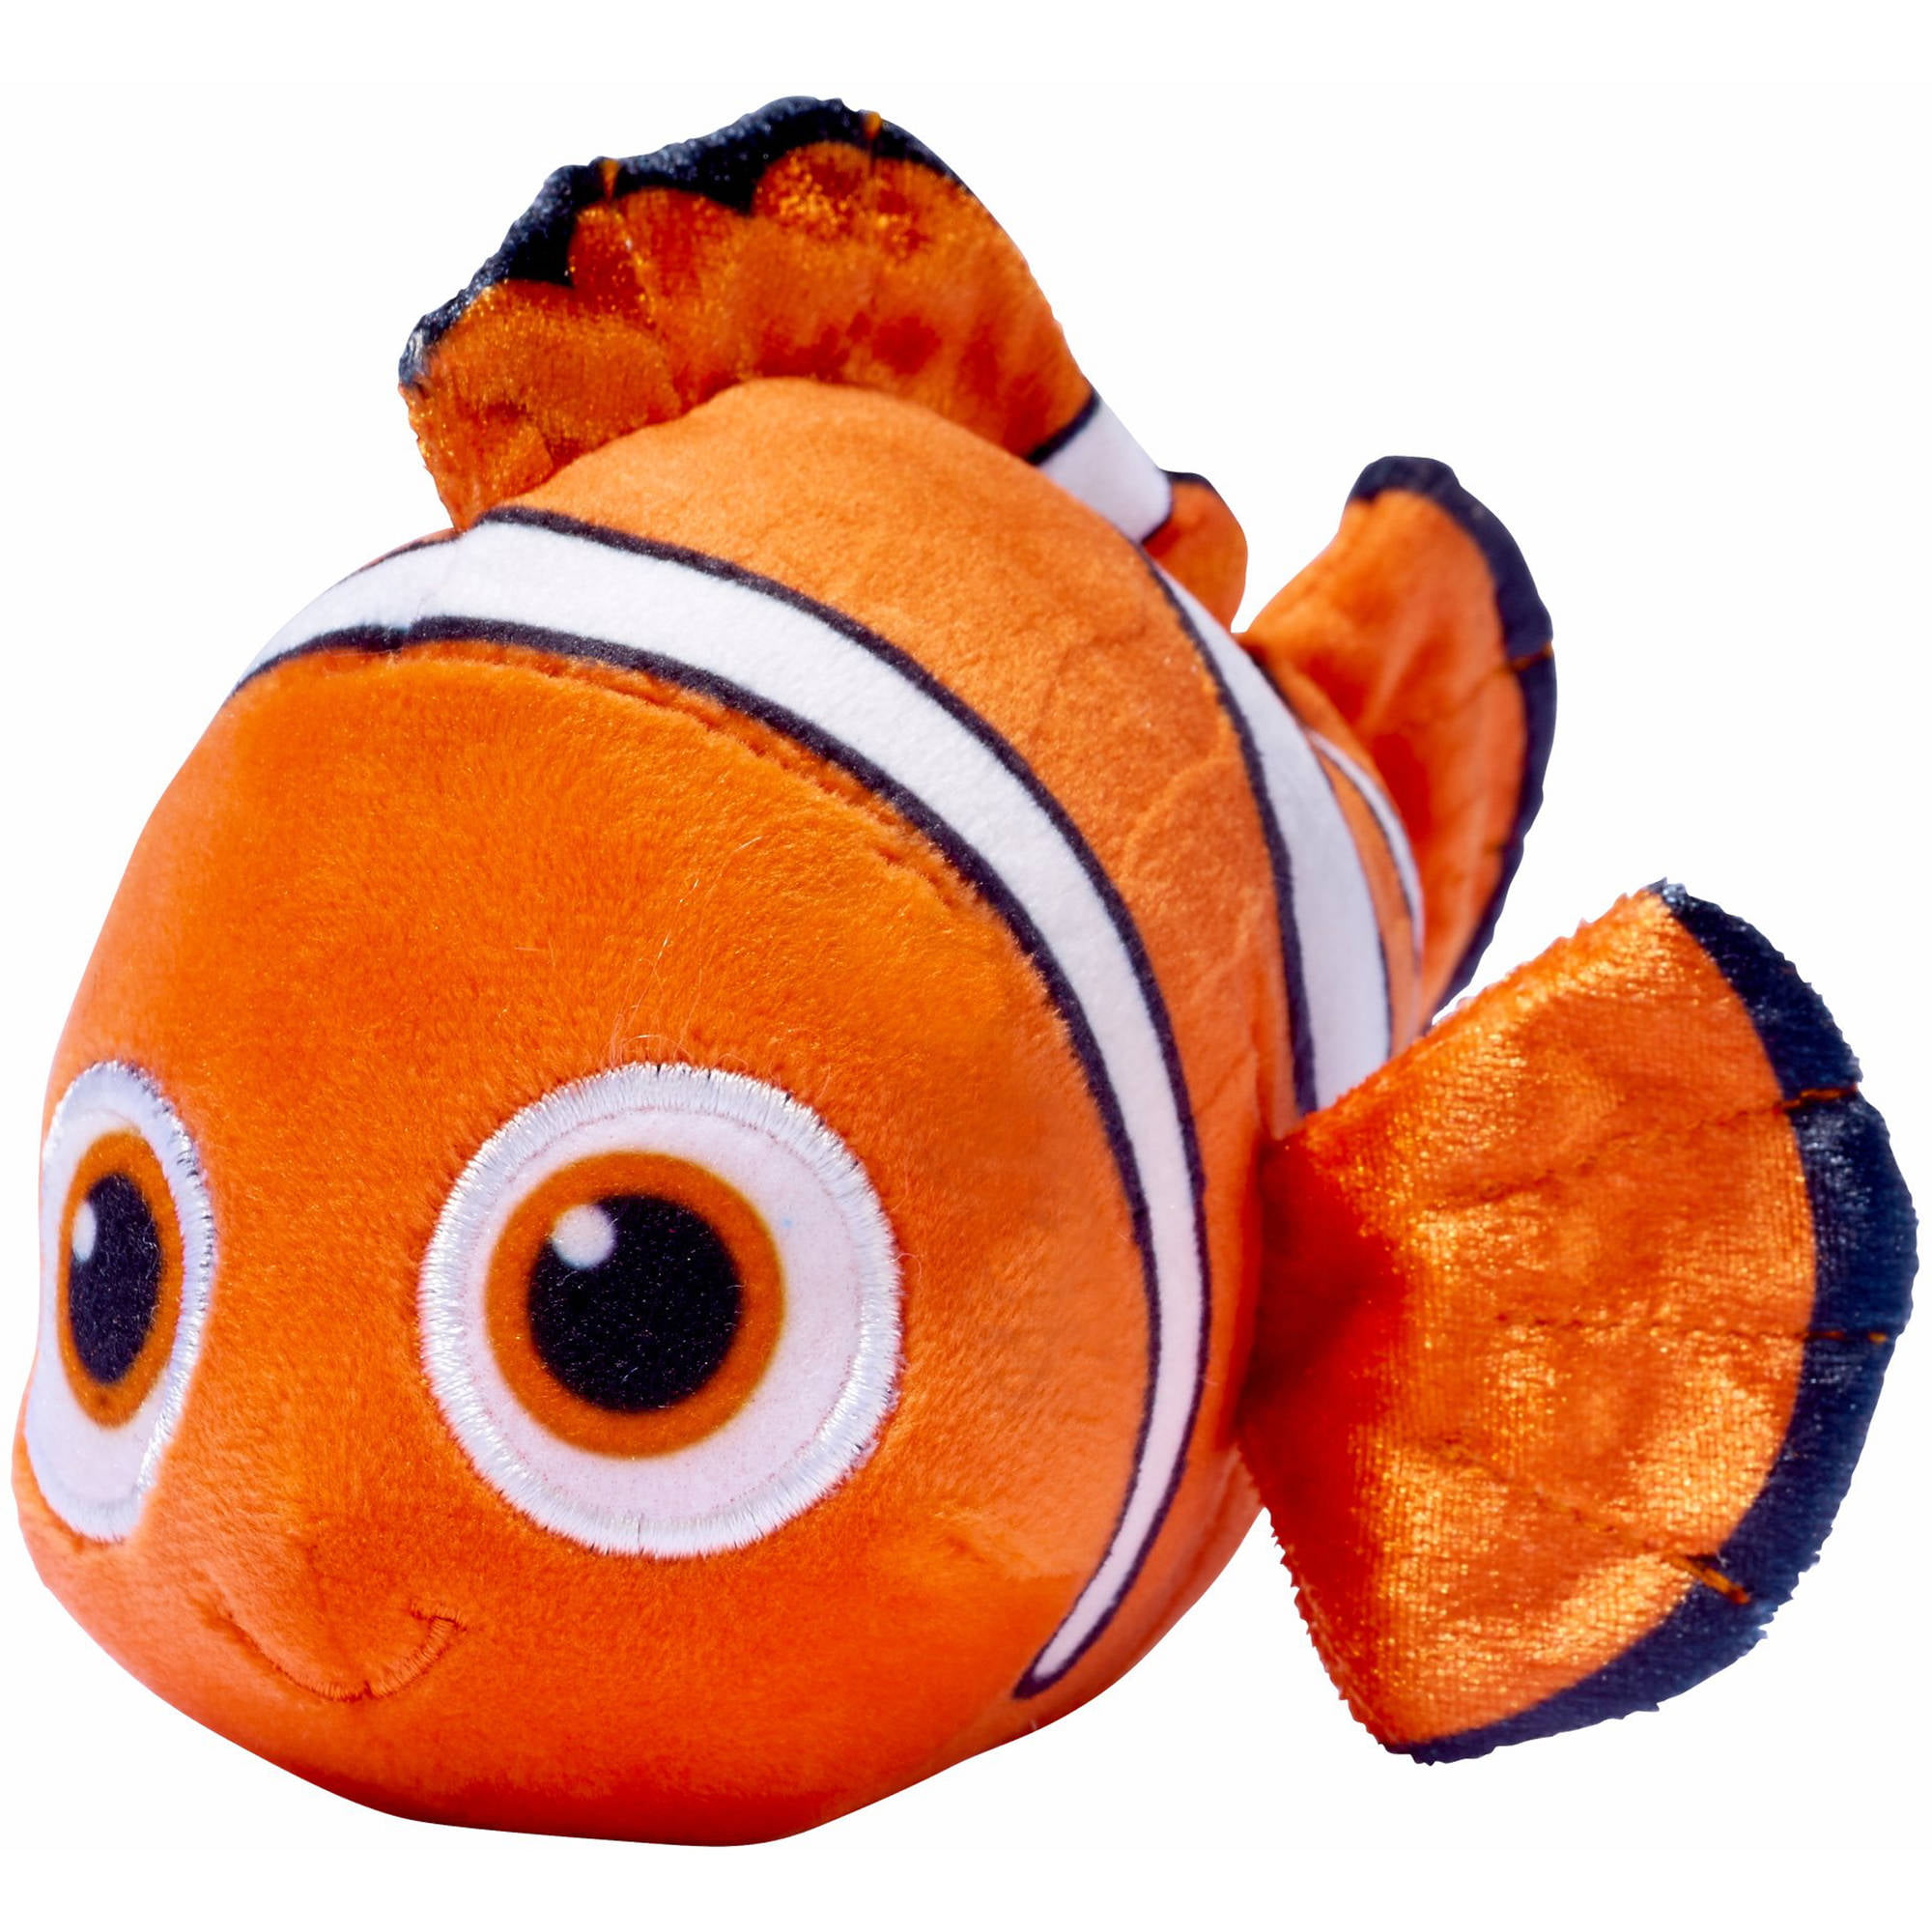 Купить игрушку рыбки. Игрушка Disney дори. Finding Nemo дори игрушки. Игрушка рыбка Немо дори. Плюшевая рыбка дори.